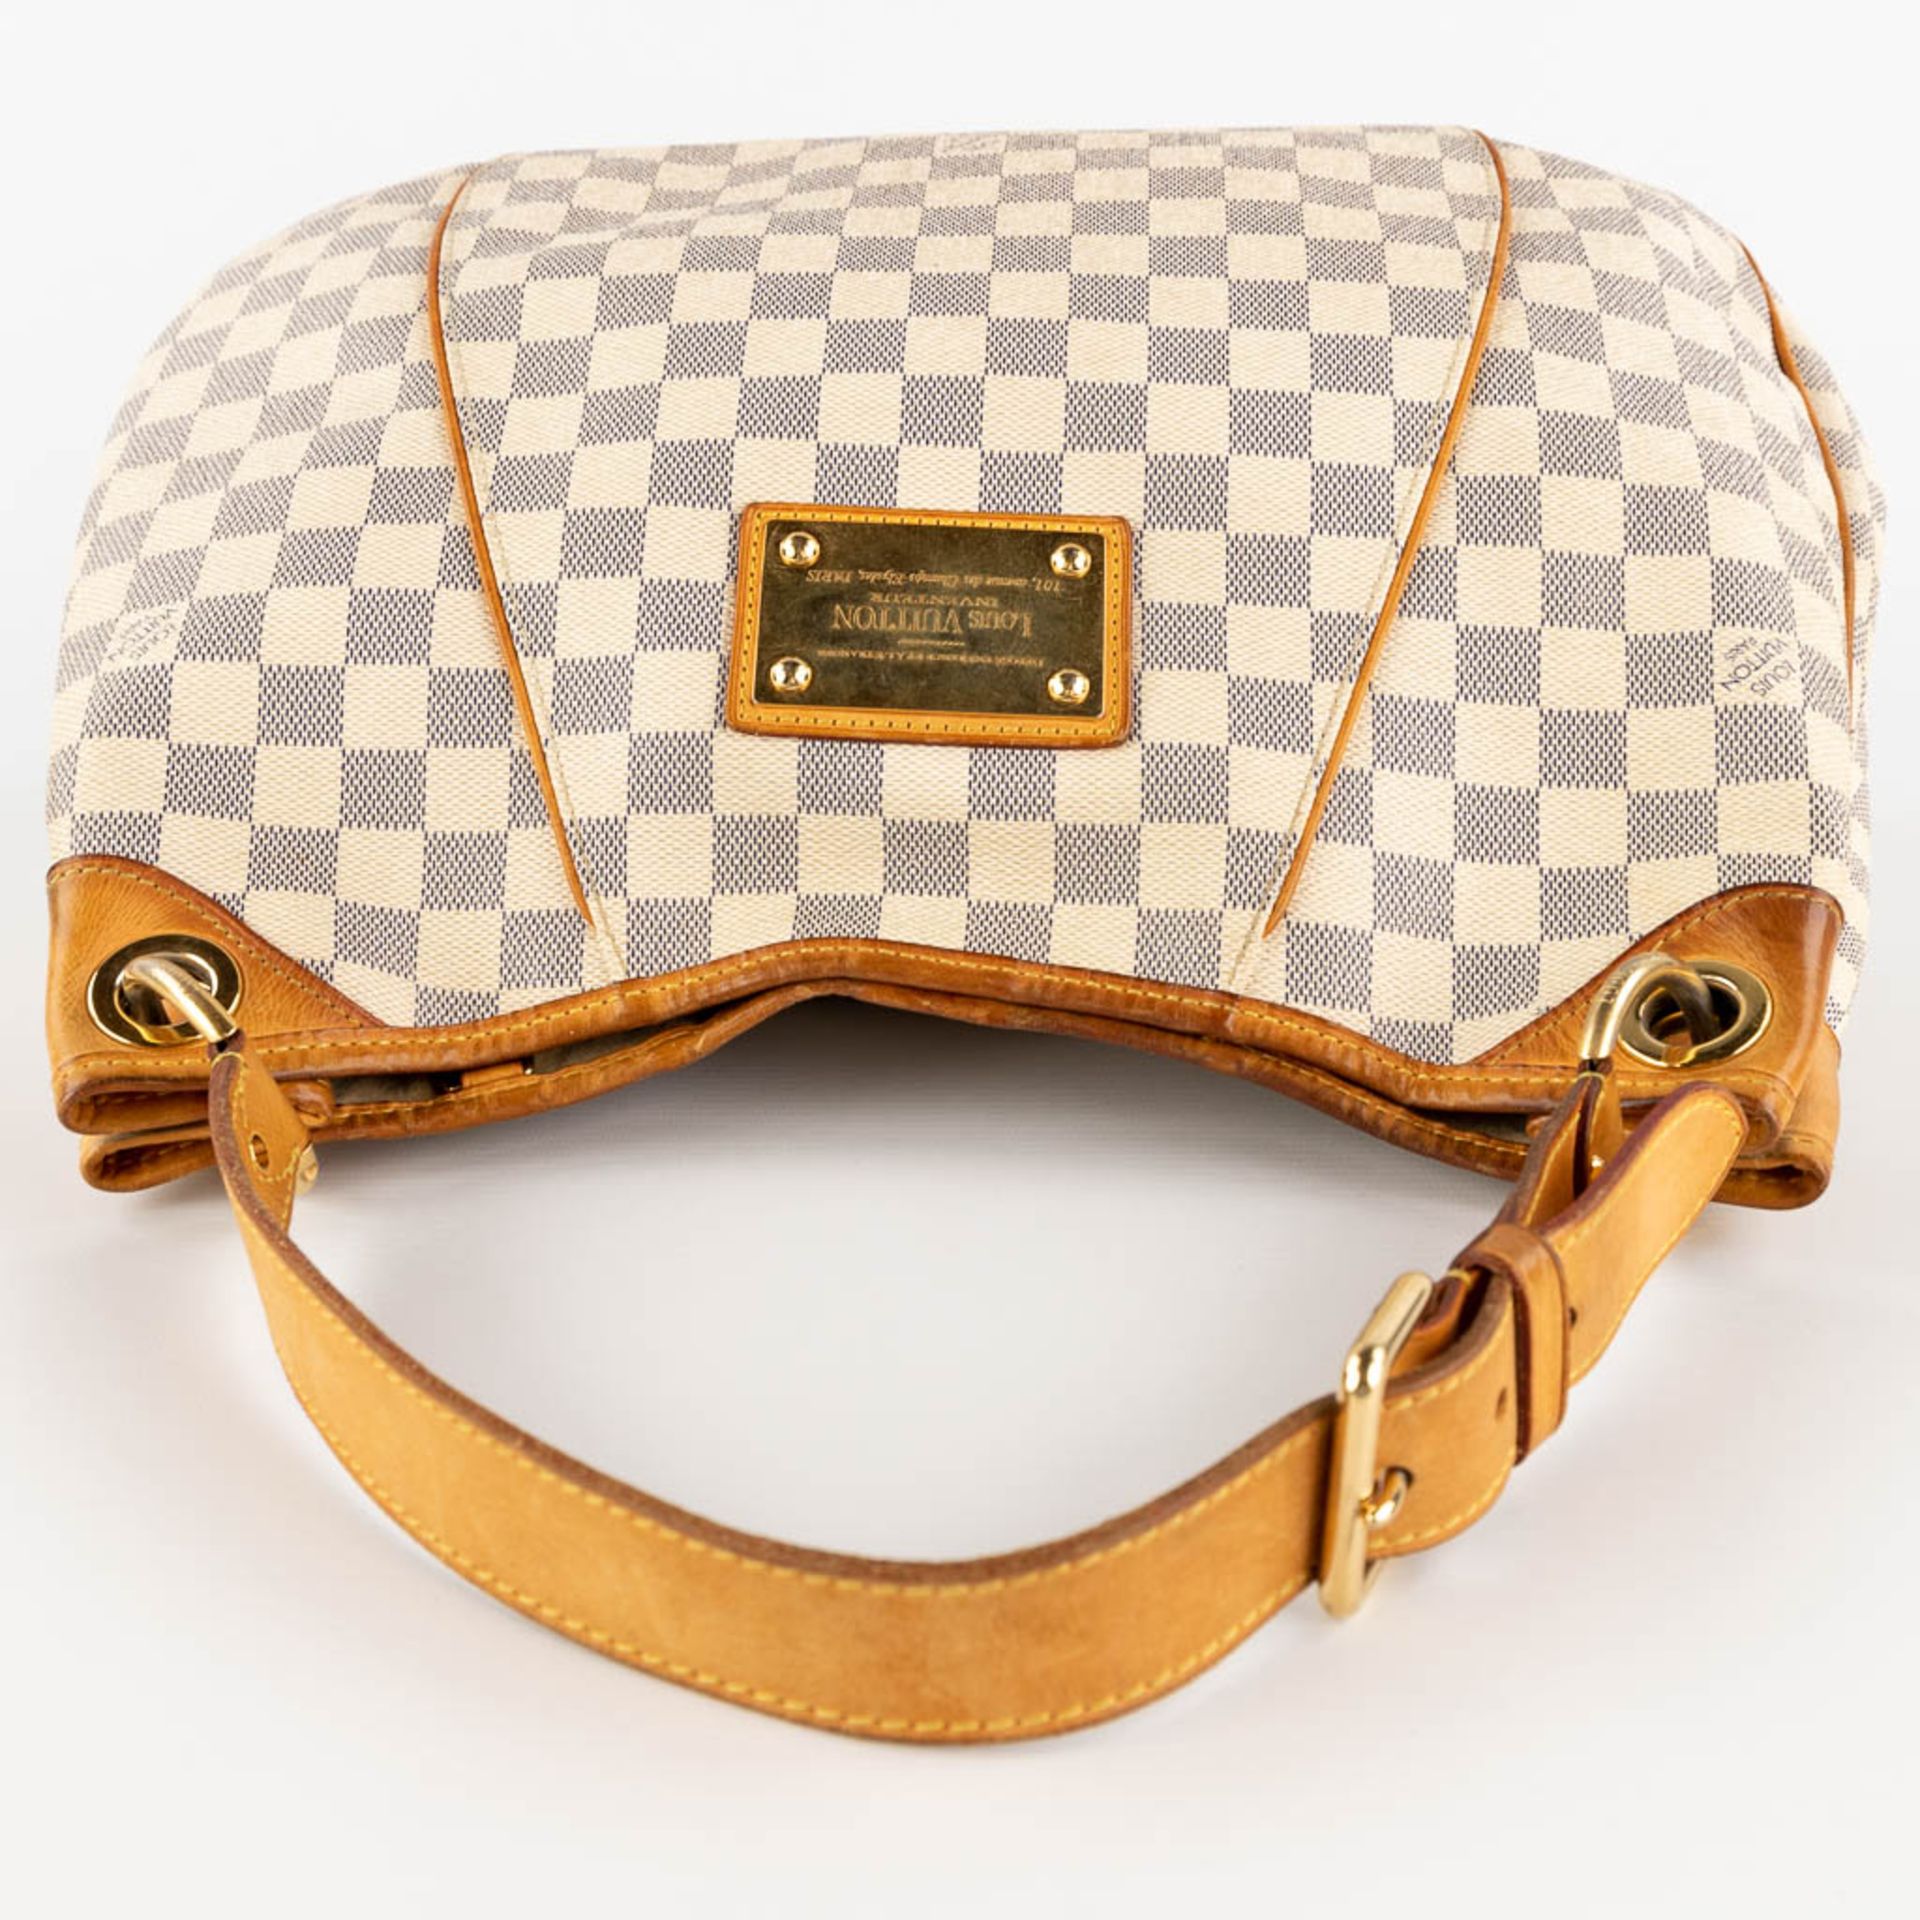 Louis Vuitton, Galleria, a handbag made of Damier Azur. (W:39 x H:30 cm) - Image 9 of 18